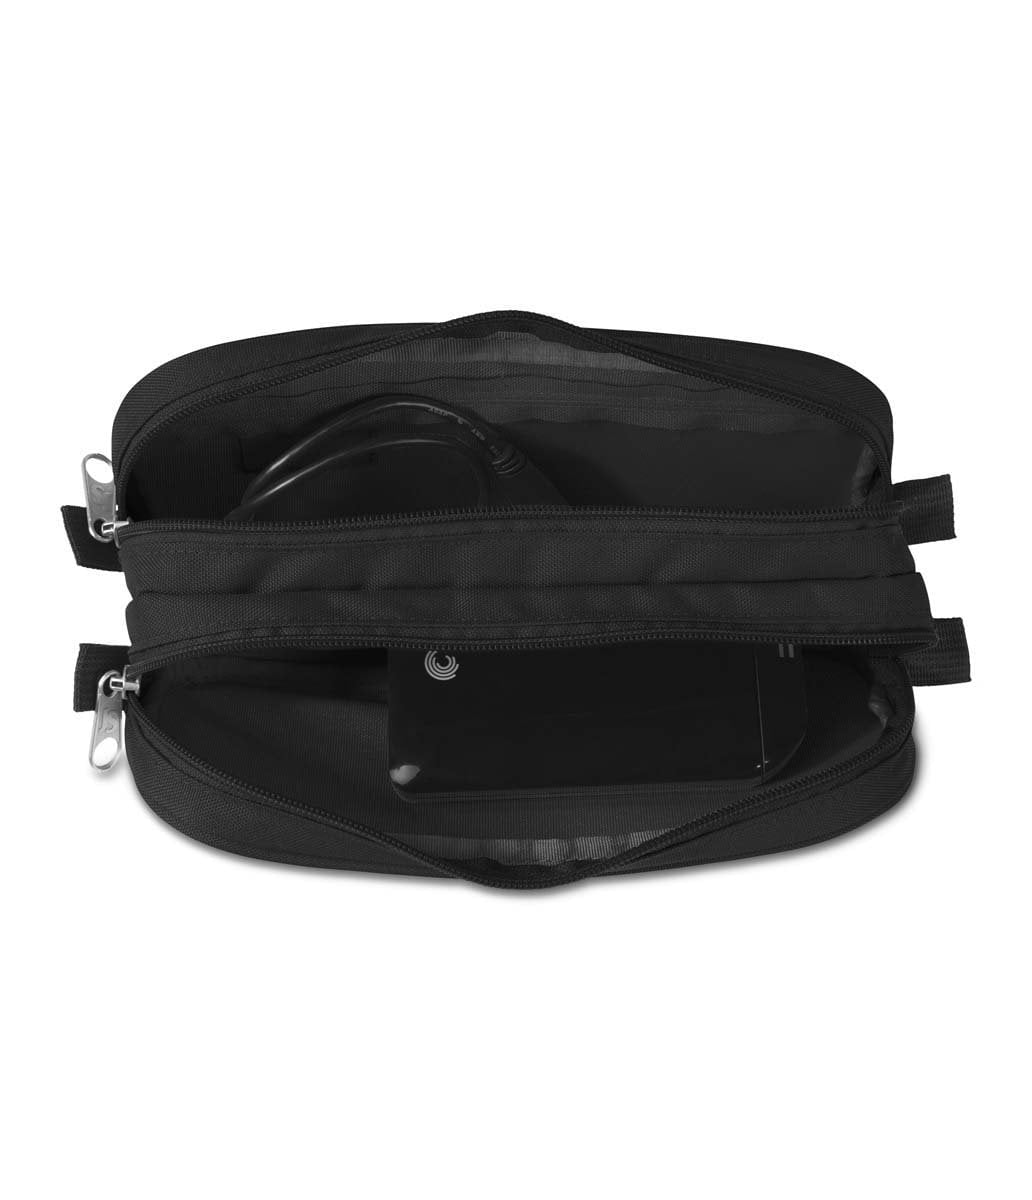 JanSport Large Accessory Pouch - Black